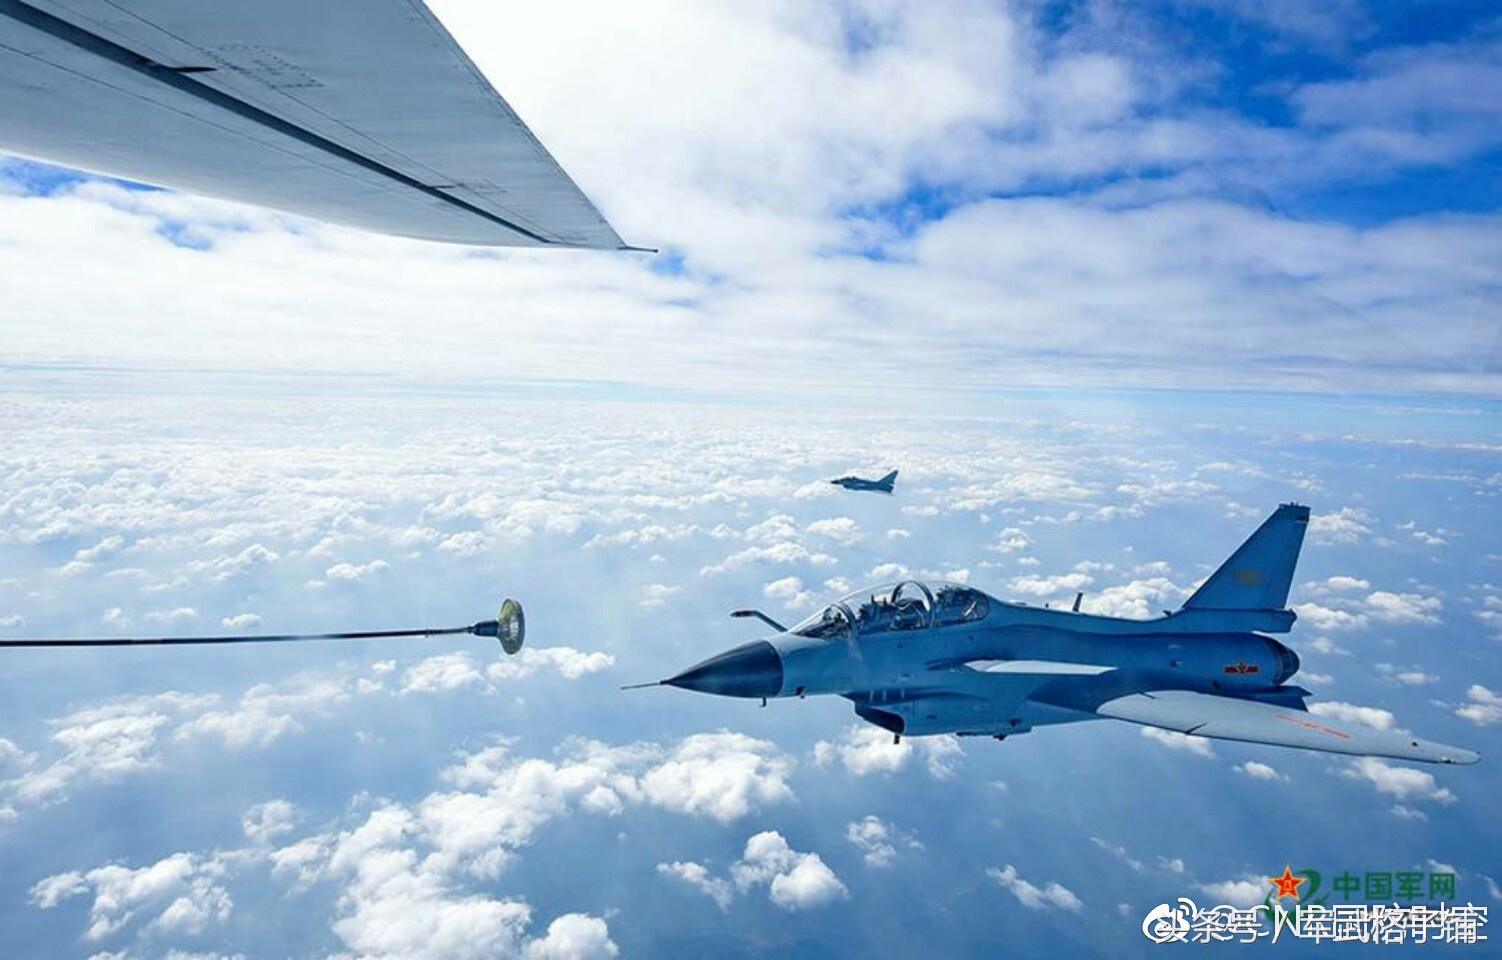 罕见战机机舱视角:看两架国产某型三代战机蓝天上演激吻